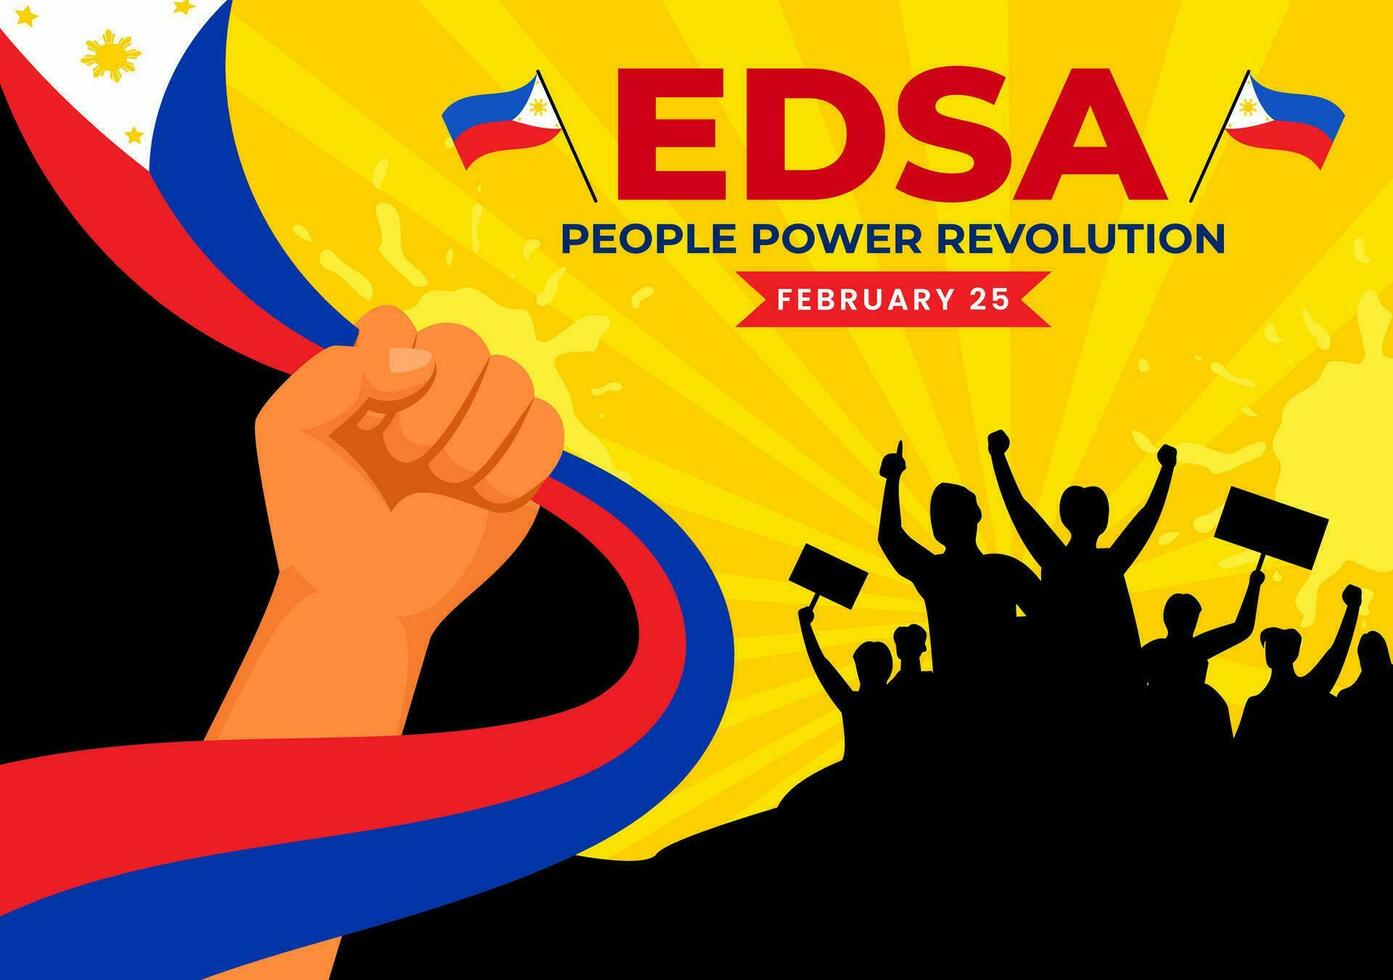 edsa personas poder revolución aniversario de filipino vector ilustración en febrero 25 con Filipinas bandera en fiesta plano dibujos animados antecedentes